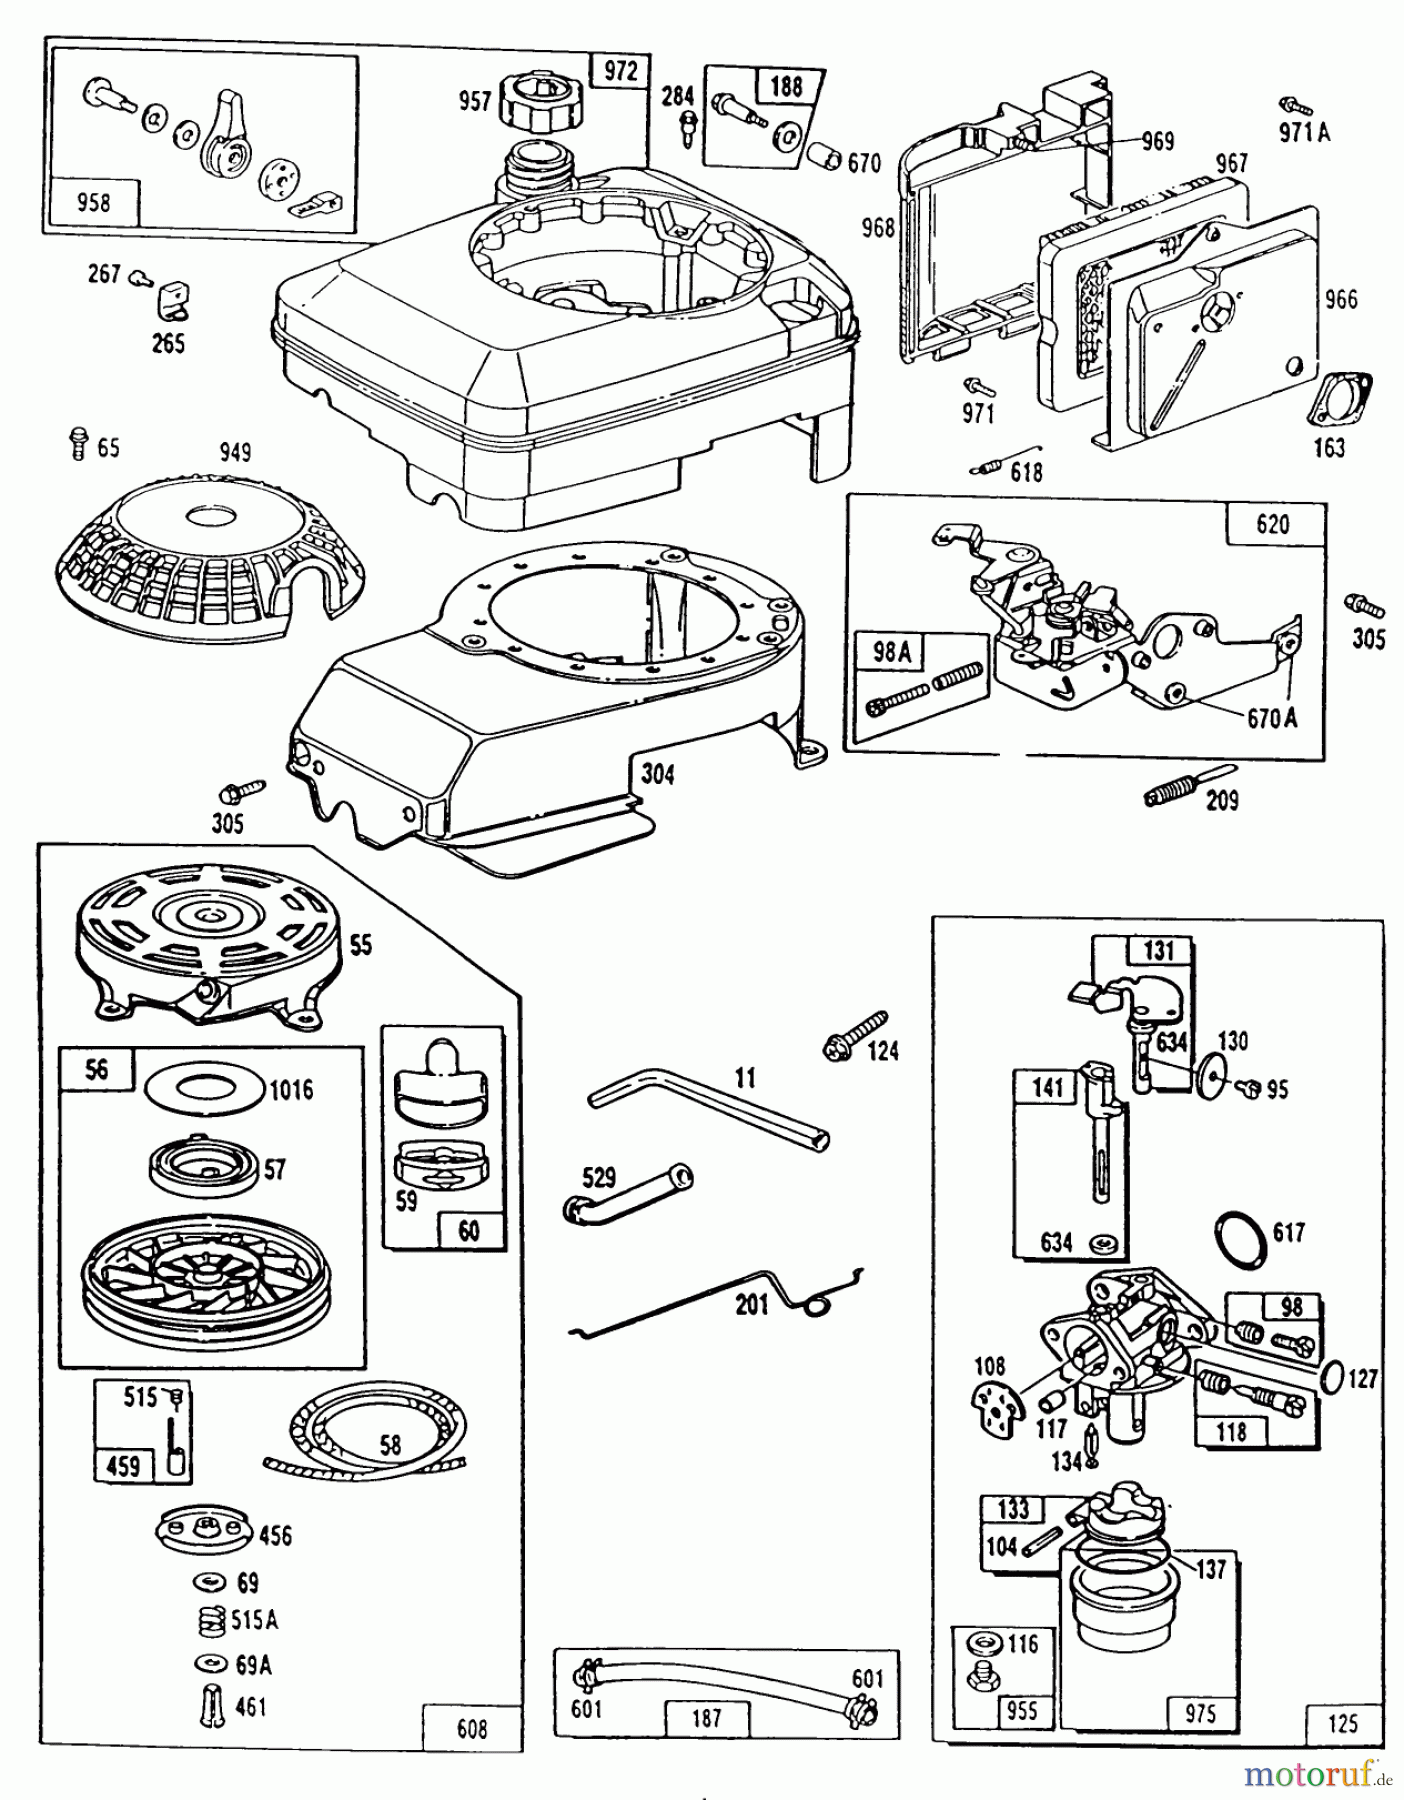  Toro Neu Mowers, Walk-Behind Seite 1 20668 - Toro Lawnmower, 1990 (0000001-0999999) ENGINE MODEL NO. 124702-3115-01 #2